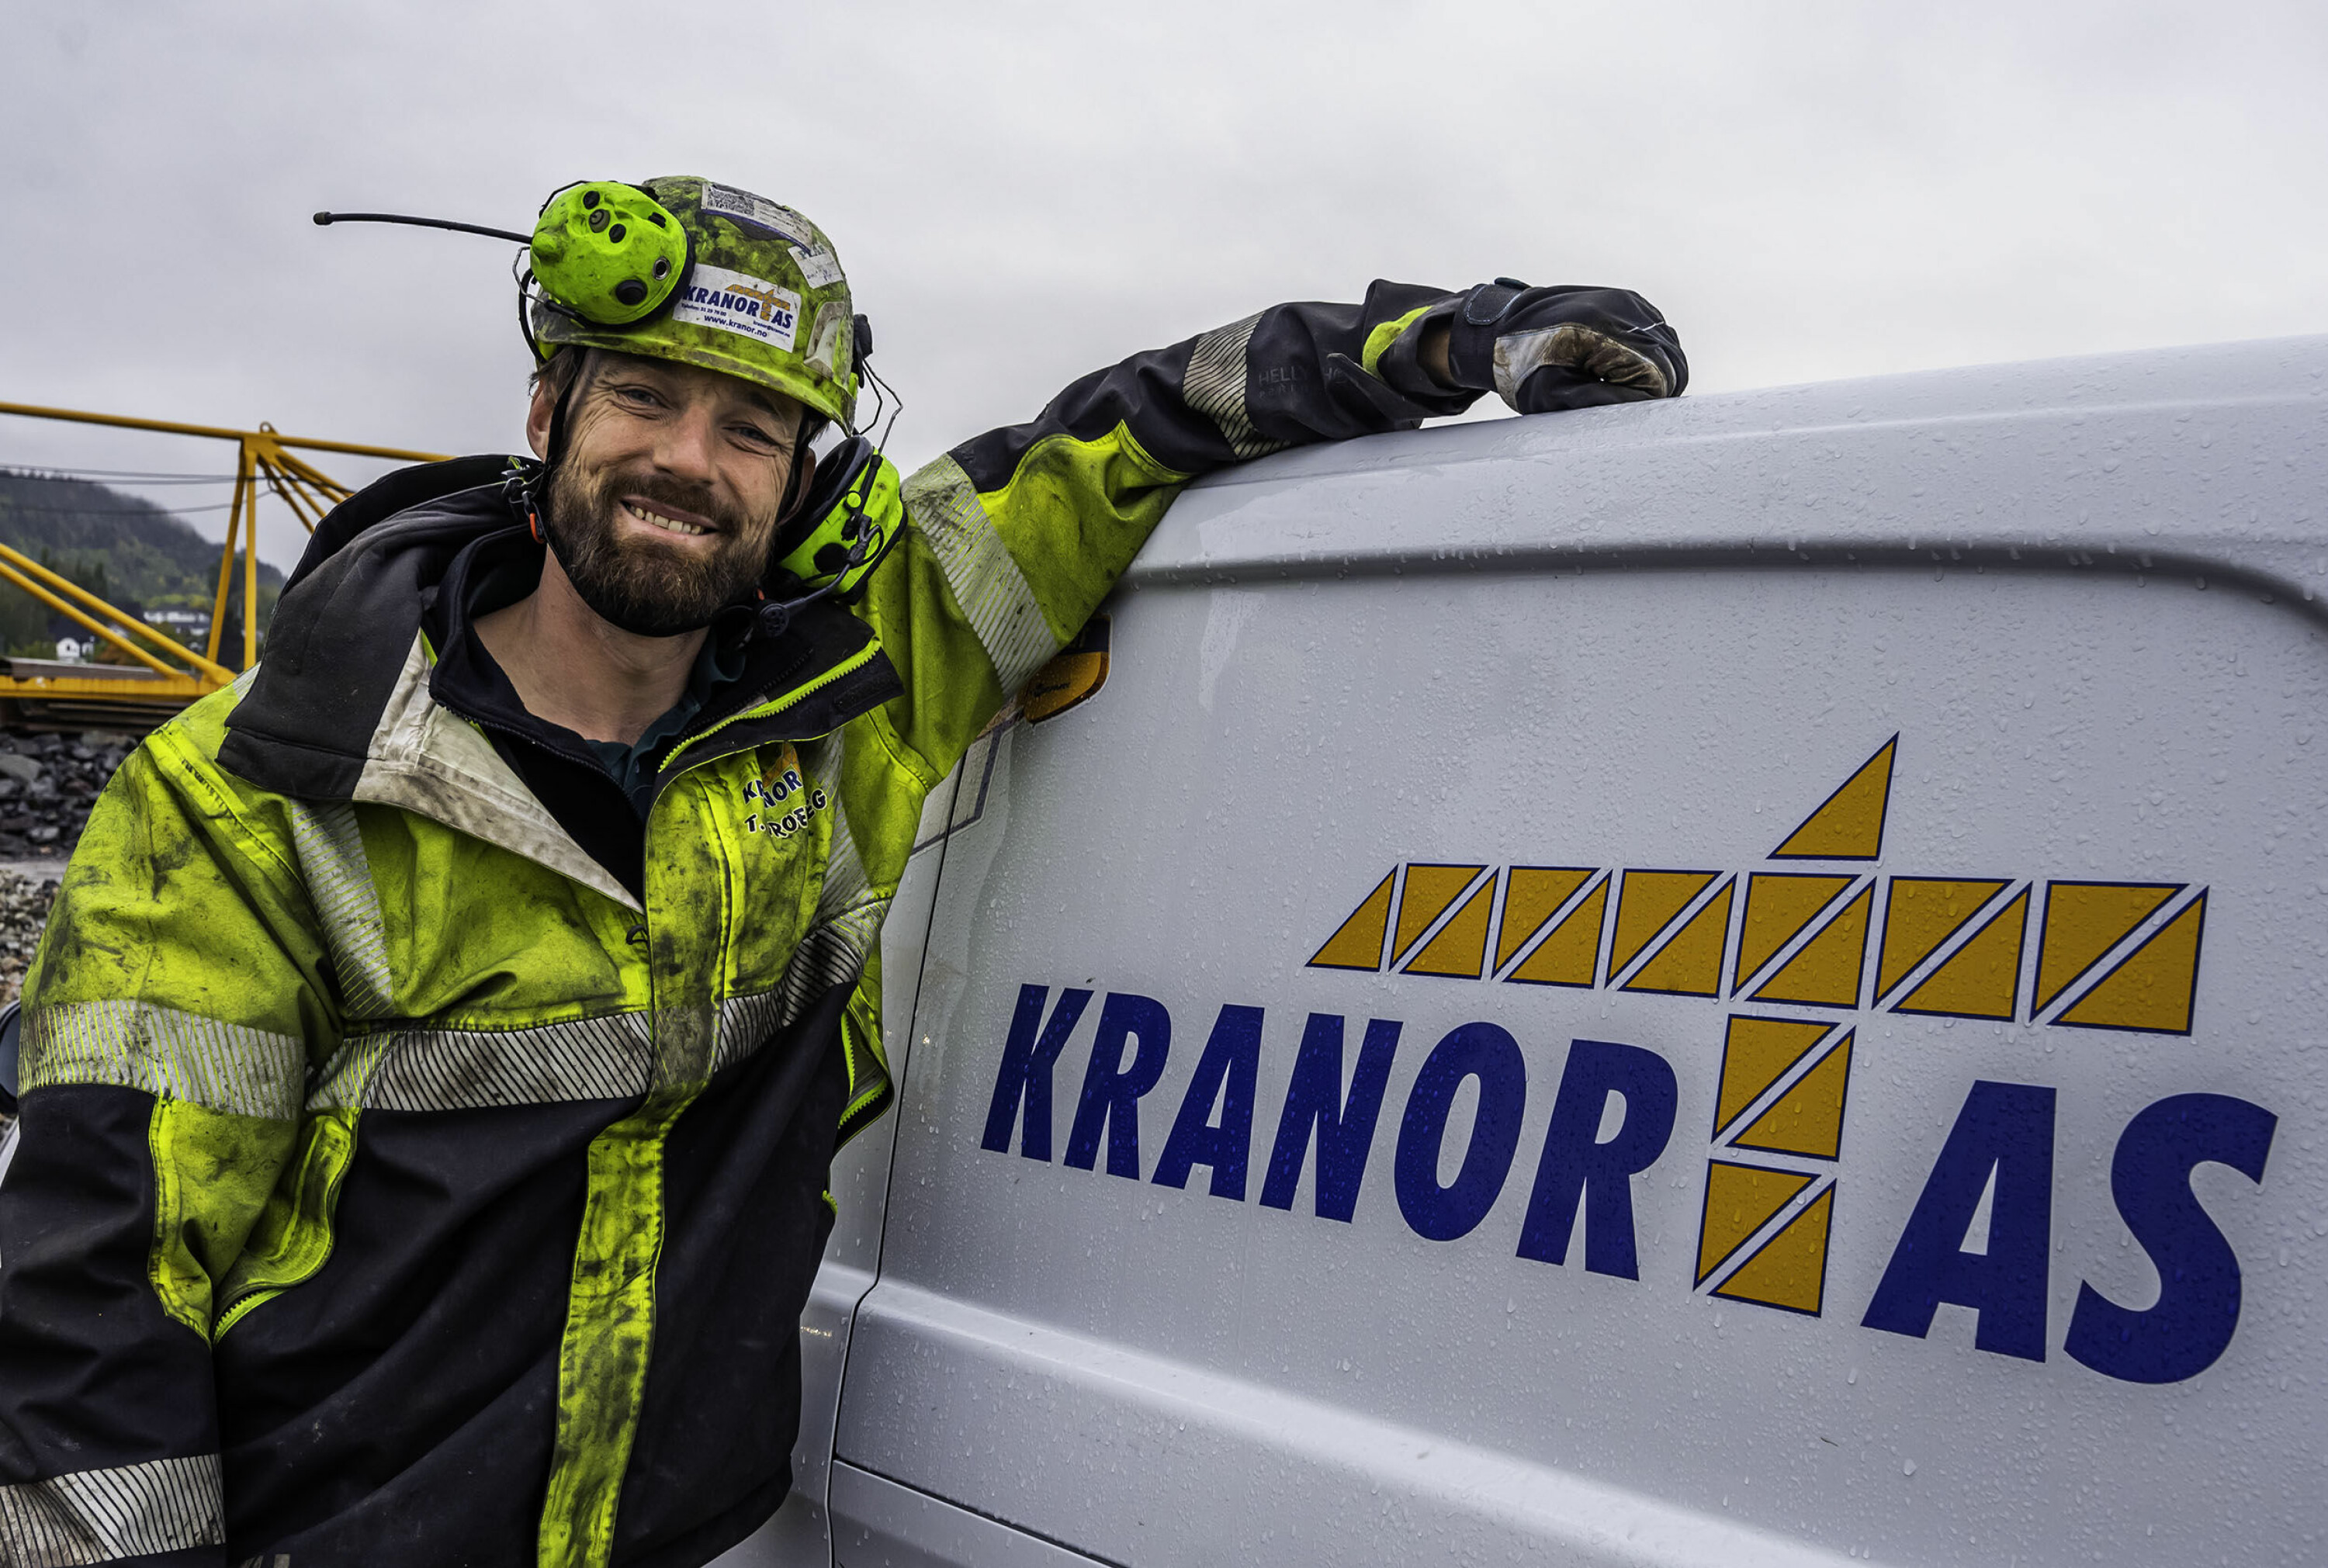 ARBEIDER PÅ TOPPEN: Tomas Groeneweg er montasjeleder i Kranor og en dem som kan observeres i arbeide på toppen anleggskranene.